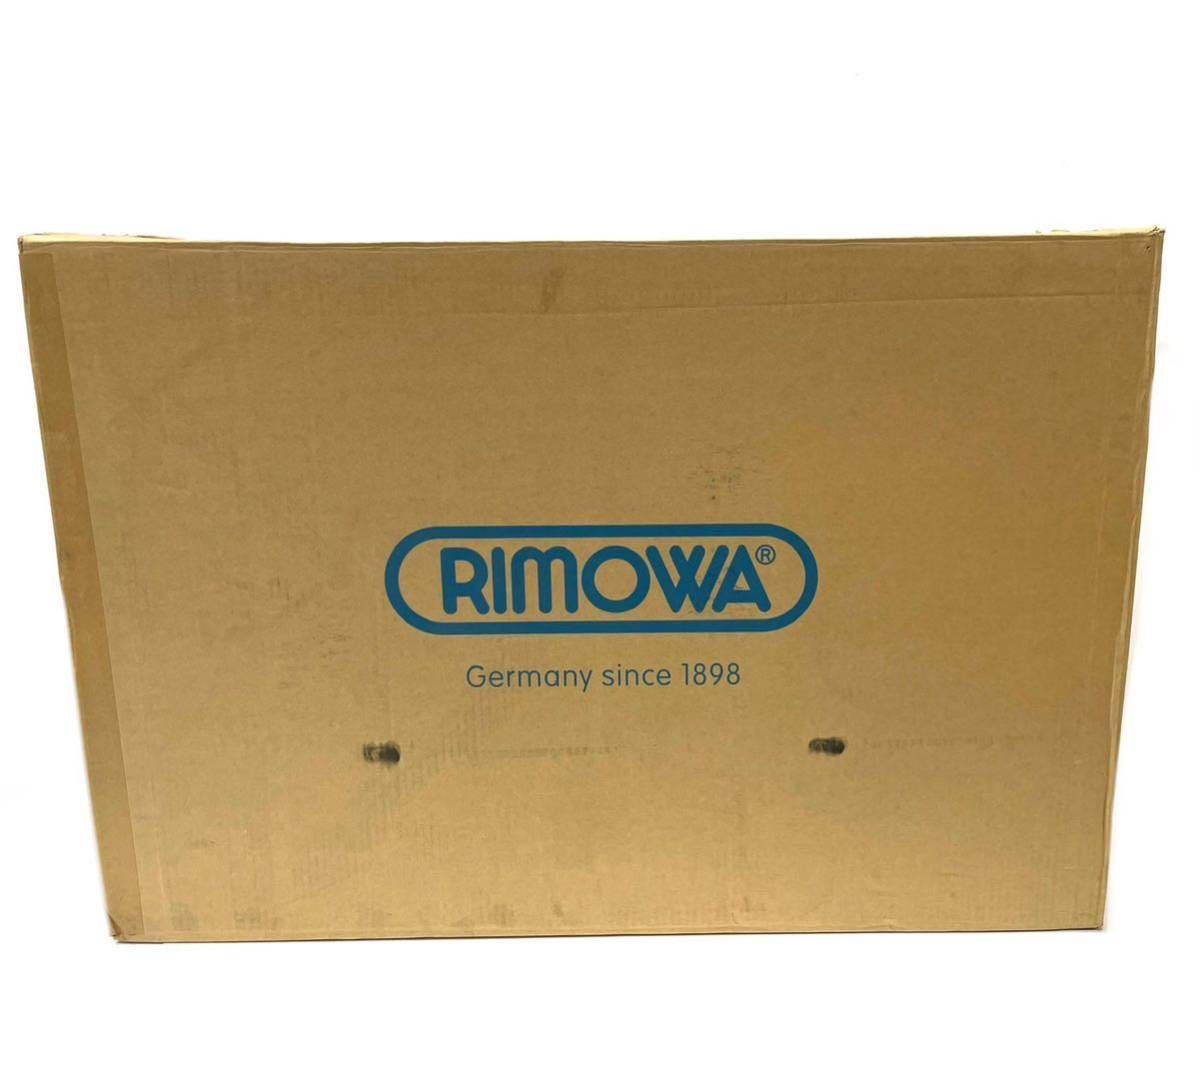 新品 RINOWA リモワ TOPAS TITANIUM トパーズ チタニウム 92477035 スーツケース キャリーバッグ アルミニウム 電子タグ 4輪 98L 7泊〜の画像3